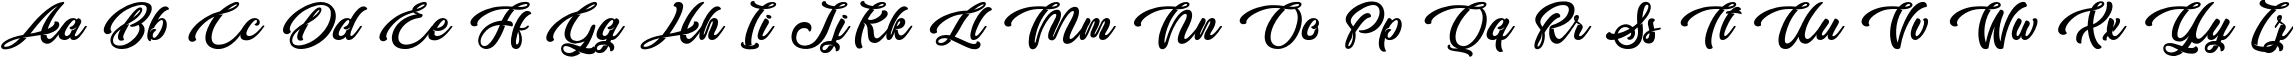 Пример написания английского алфавита шрифтом Butterfly Kiss - Personal Use